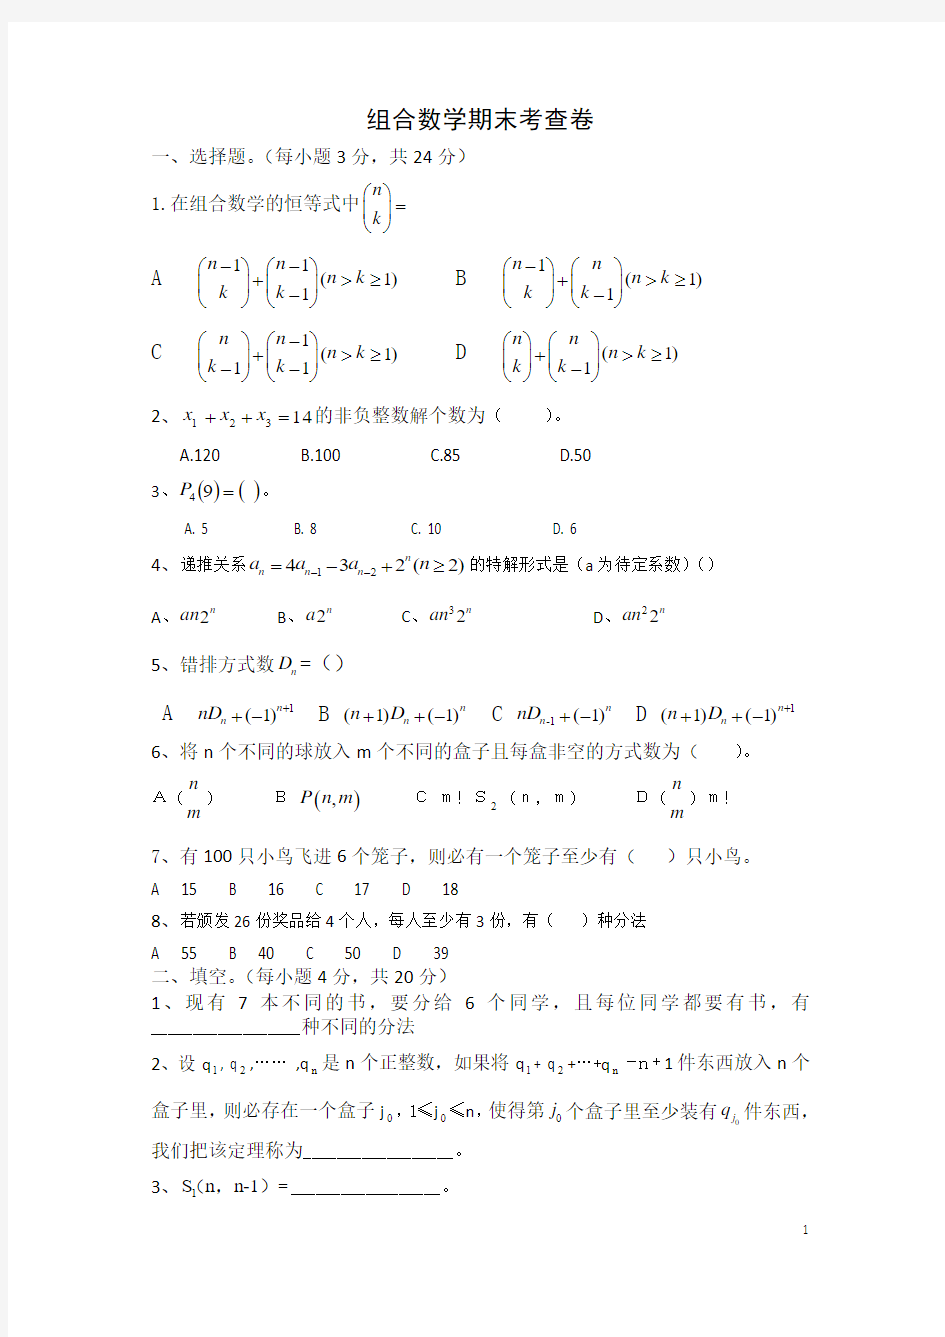 大学数学组合数学试题与答案(修正版)4